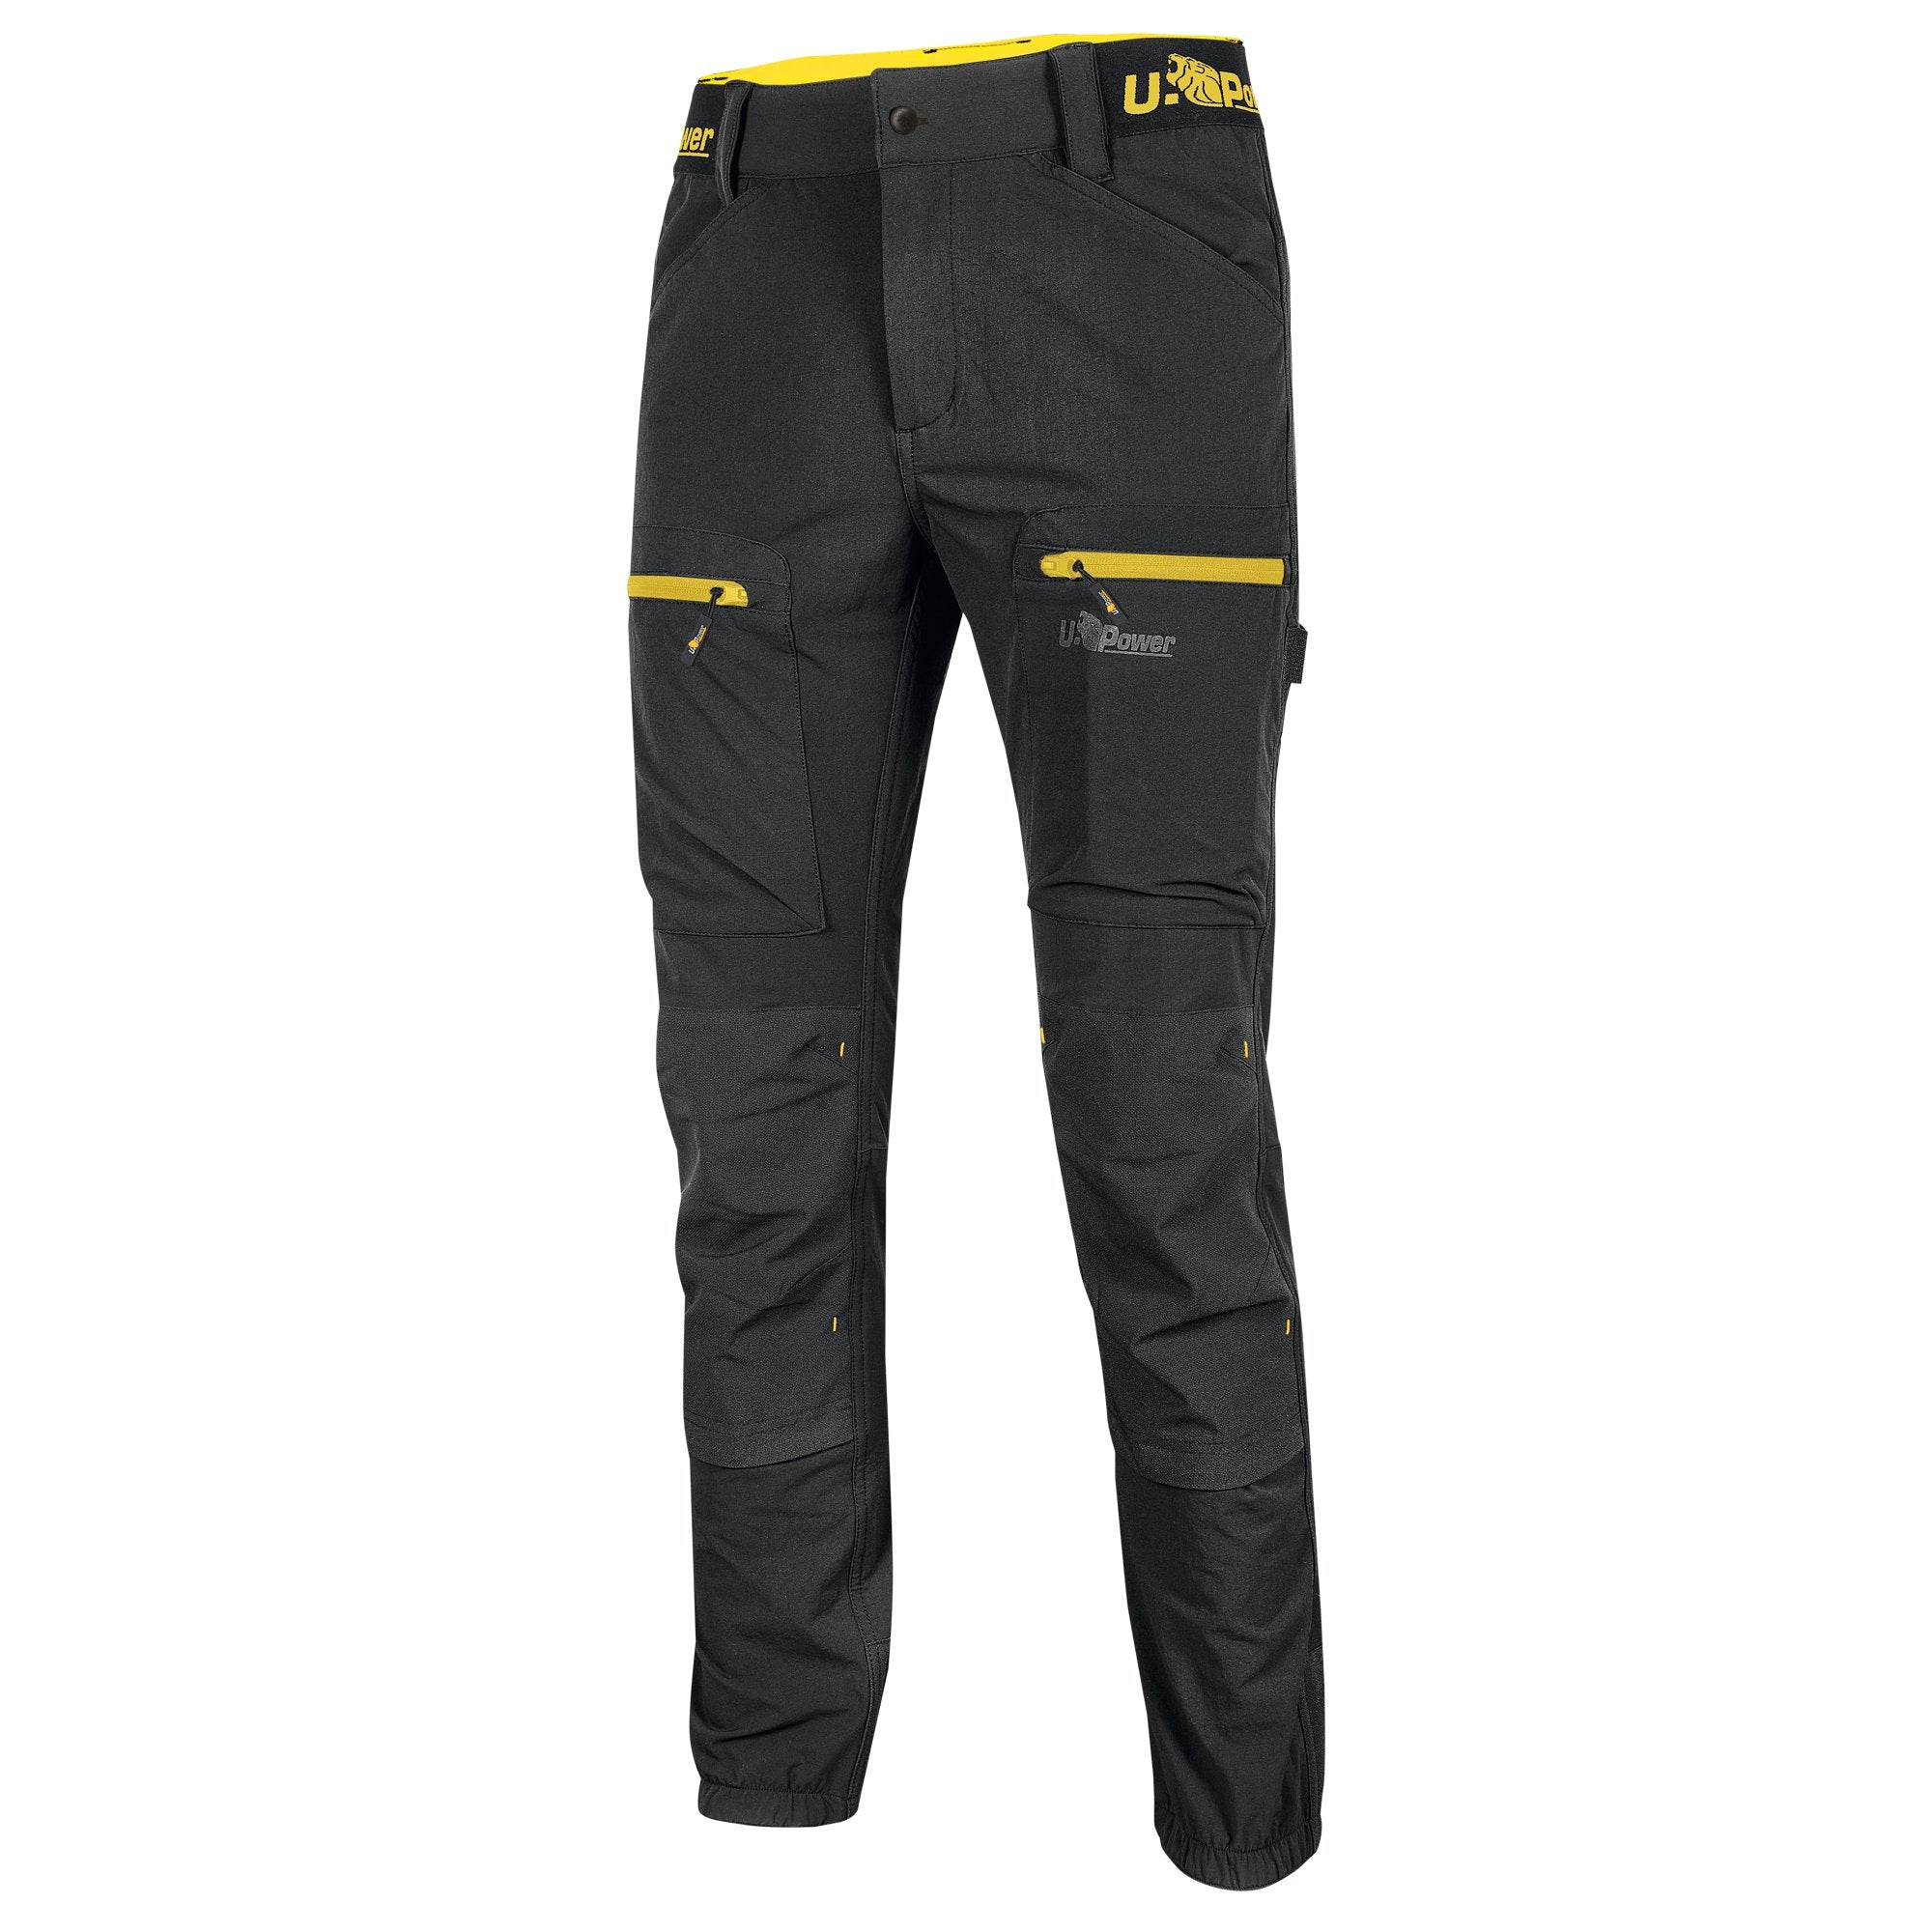 u-power-pantalone-horizon-tg-xl-nero-giallo